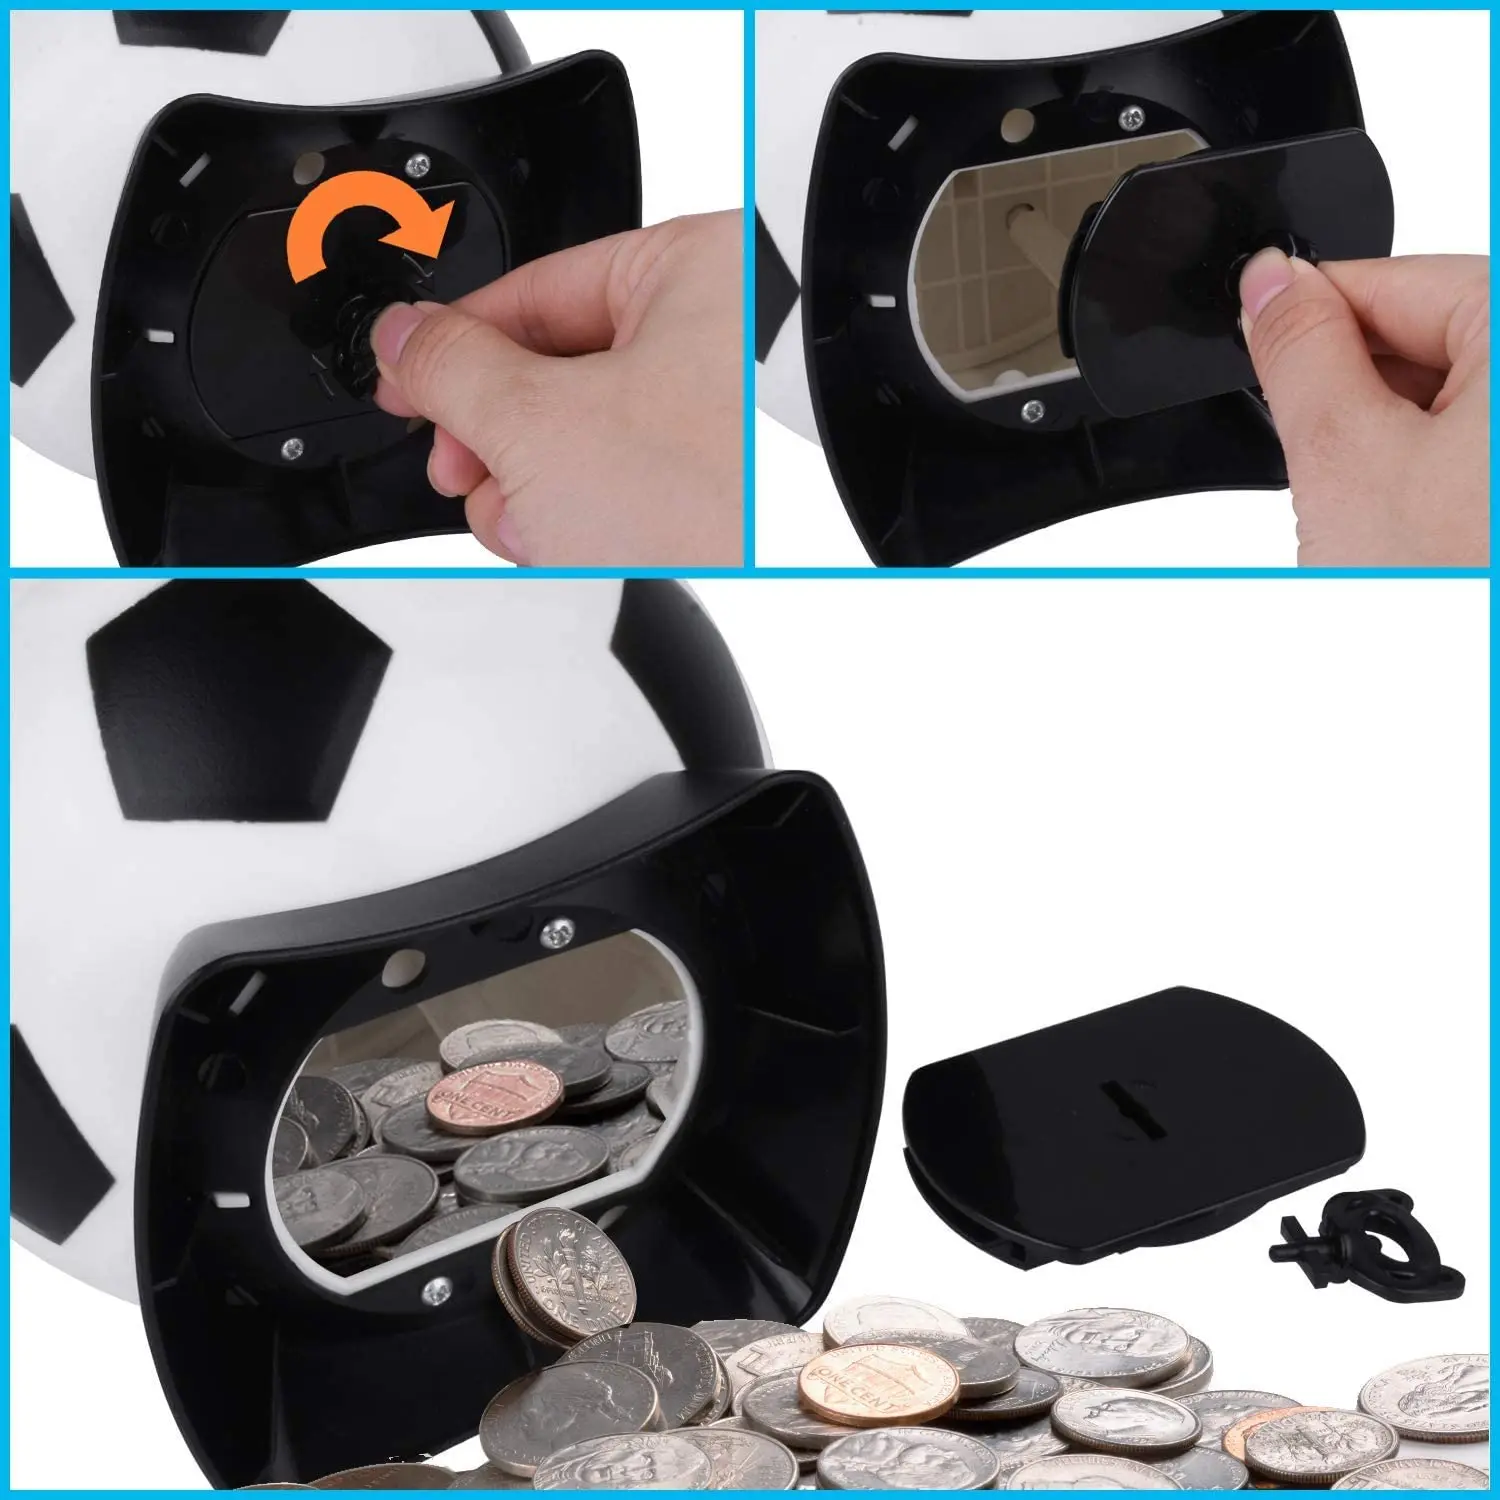 regalo perfetto per i bambini ONEVER Contenitore automatico Digtal Digit Coin Counter Contenitore Bancario Money Box con display LCD 2,5L grande capacità per monete 